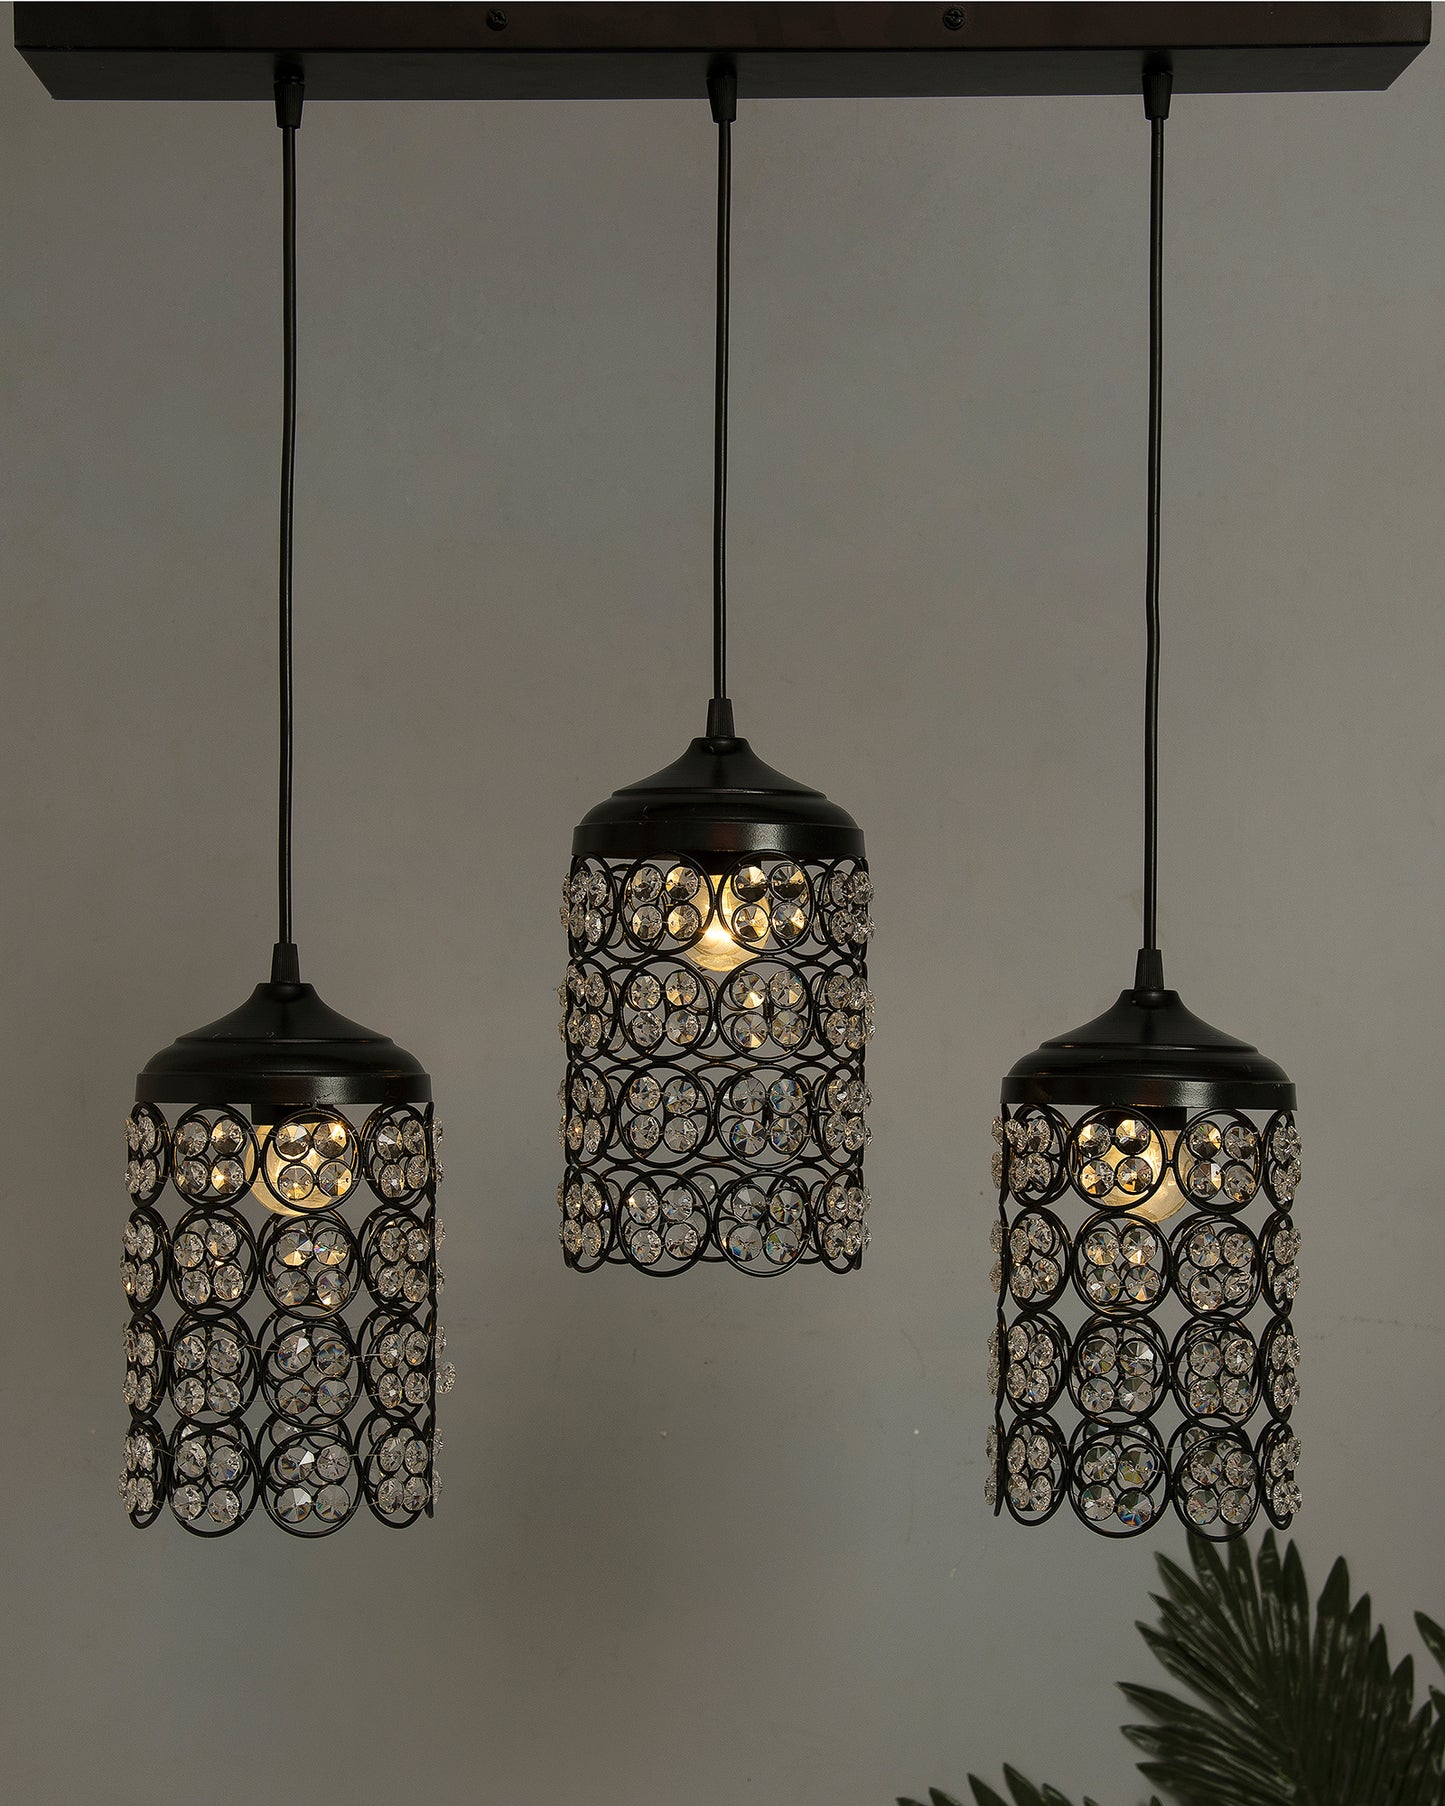 3-Lights Linear Cluster Cylinder Chandelier Quad Crystal Hanging Light, Decorative, Black, Kitchen Area and Dining Room Light, LED/Filament Light